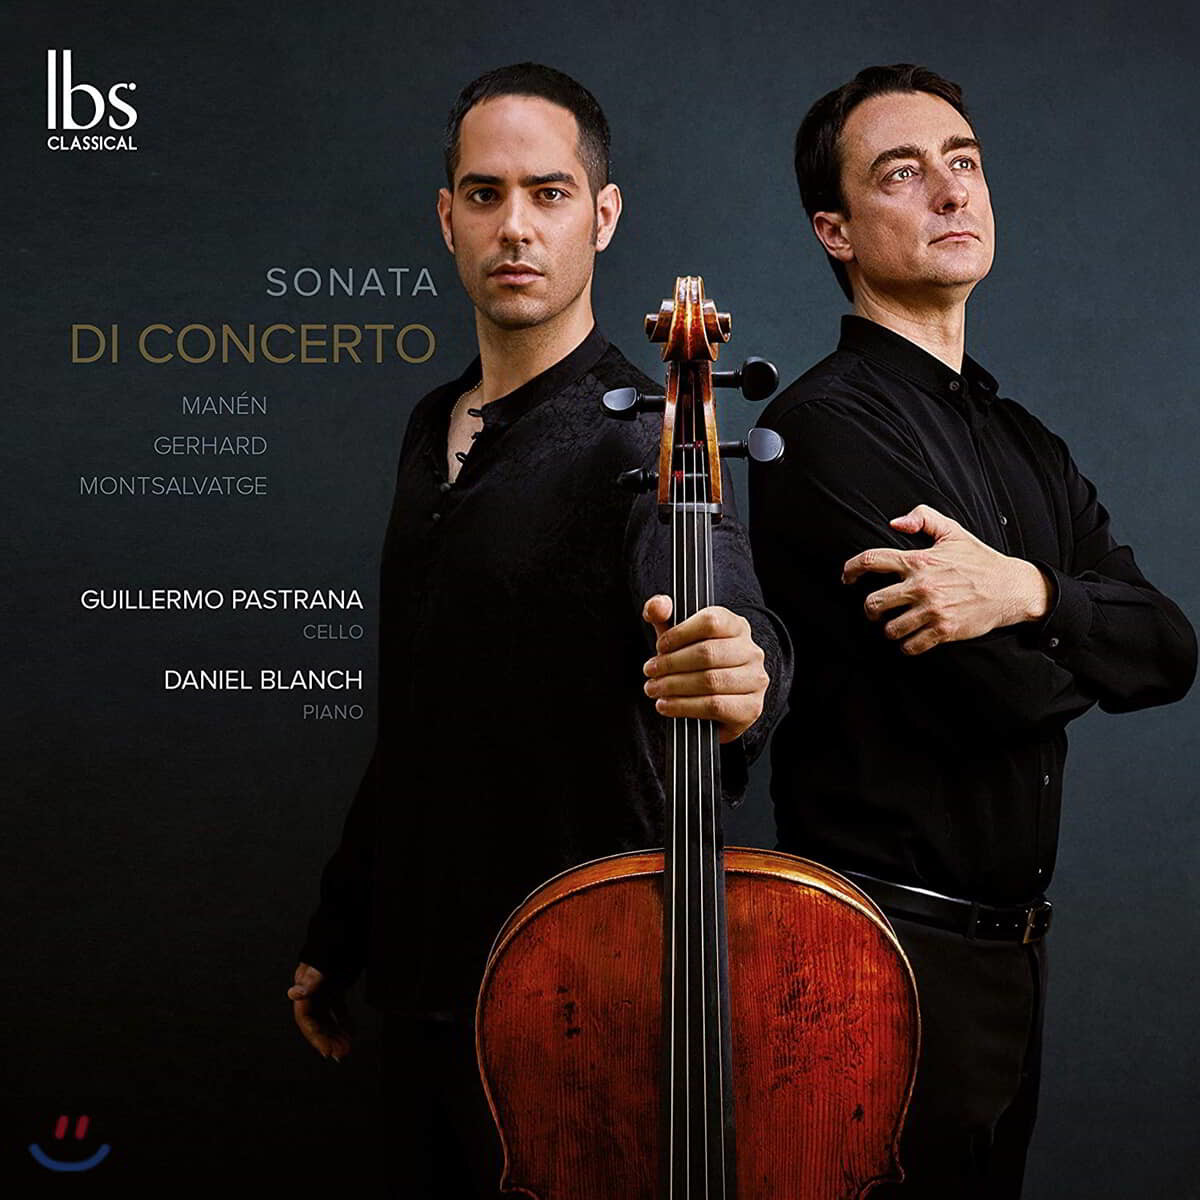 Guillermo Pastrana / Daniel Blanch 20세기 스페인 첼로 소나타 (Sonata Di Concerto)